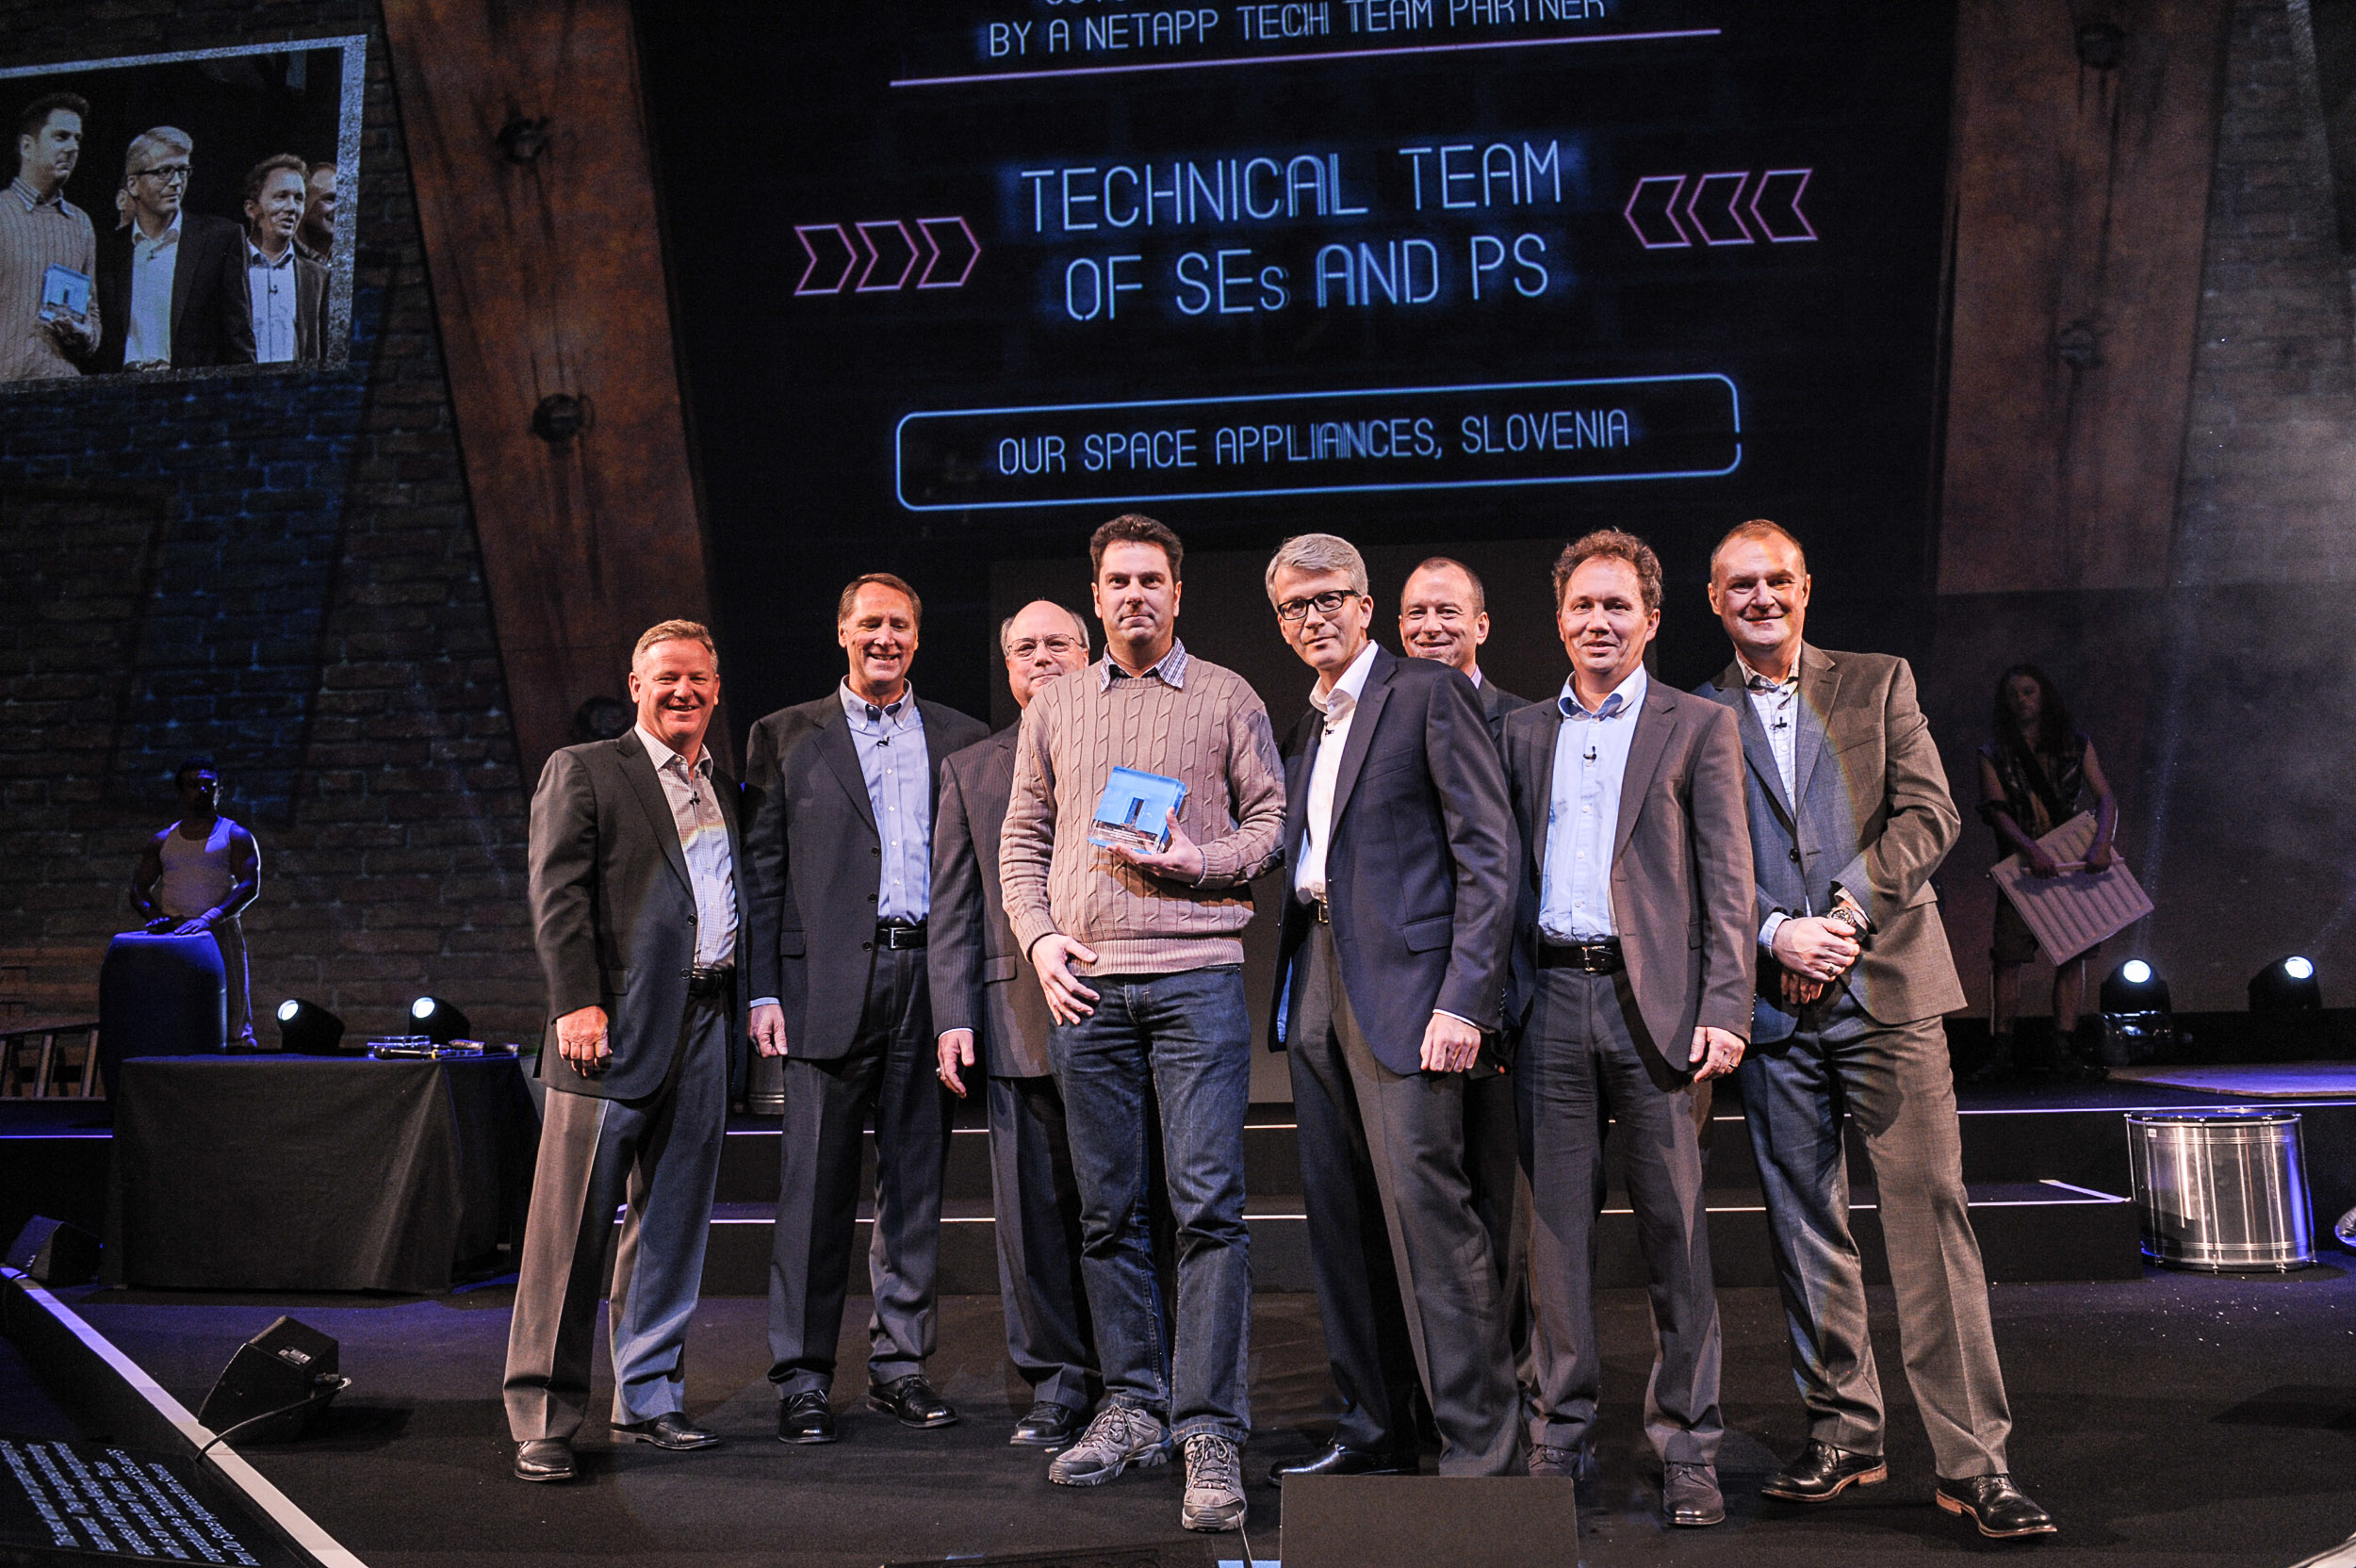 OSA prejela narado Outstanding Contribution by a NetApp Tech Team Partner